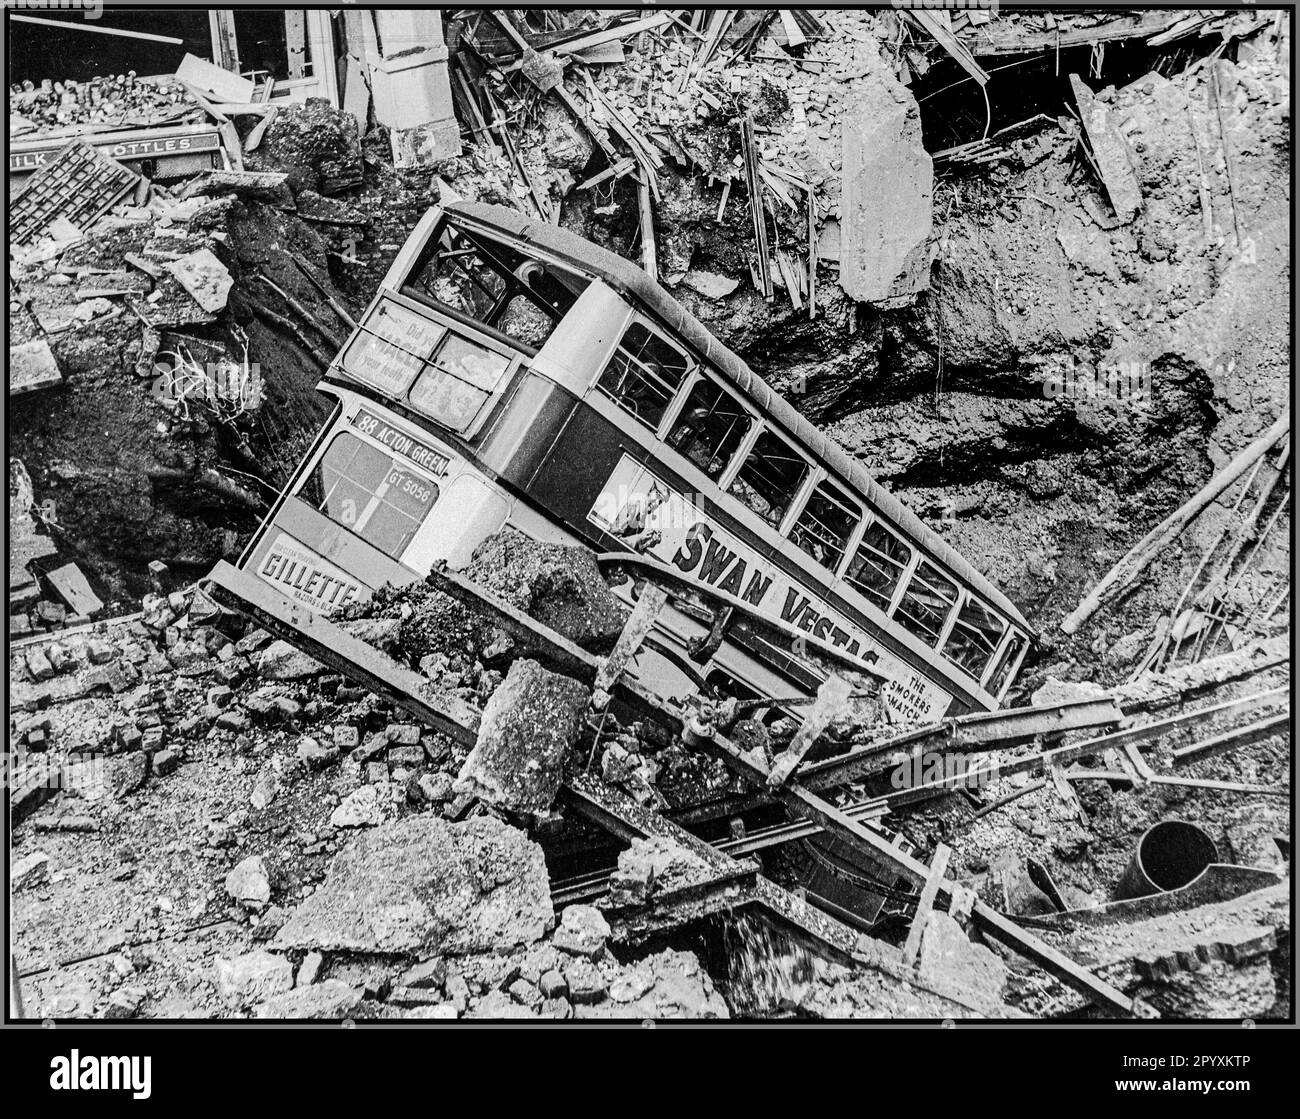 WW2 le Londres Blitz avec un bus londonien dans un cratère à la bombe après un attentat terroriste éclair par l'Allemagne nazie. Après un RAID de bombardement, un bus se trouve dans un cratère à Balham, dans le sud de Londres. RAID aérien endommagé en Grande-Bretagne pendant la Seconde Guerre mondiale. Deuxième Guerre mondiale Banque D'Images